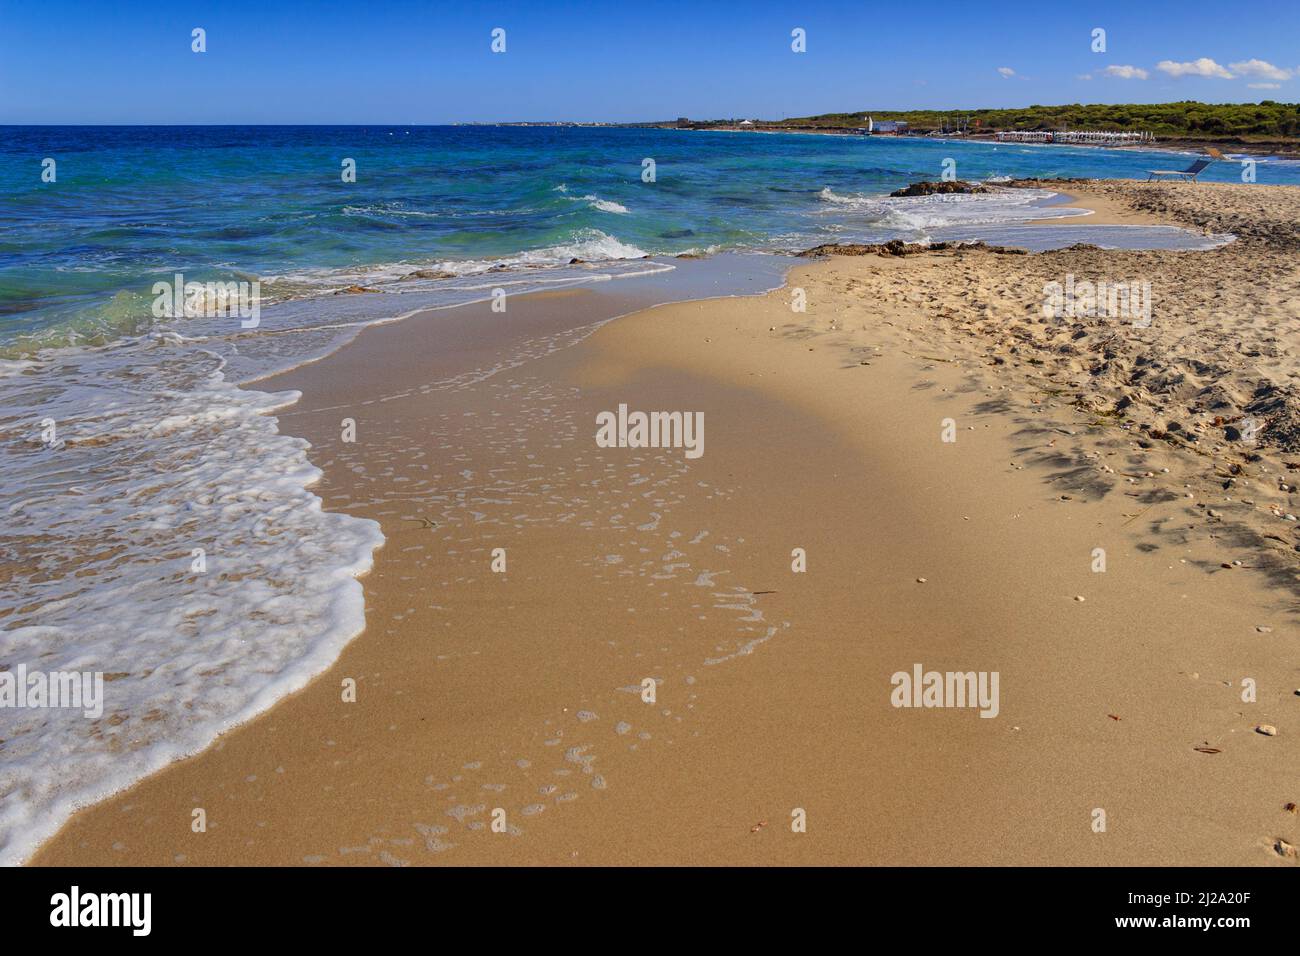 Summertime.le spiagge di sabbia più belle della Puglia: Riserva naturale le Cesine. Si tratta di una zona umida di importanza internazionale. Foto Stock